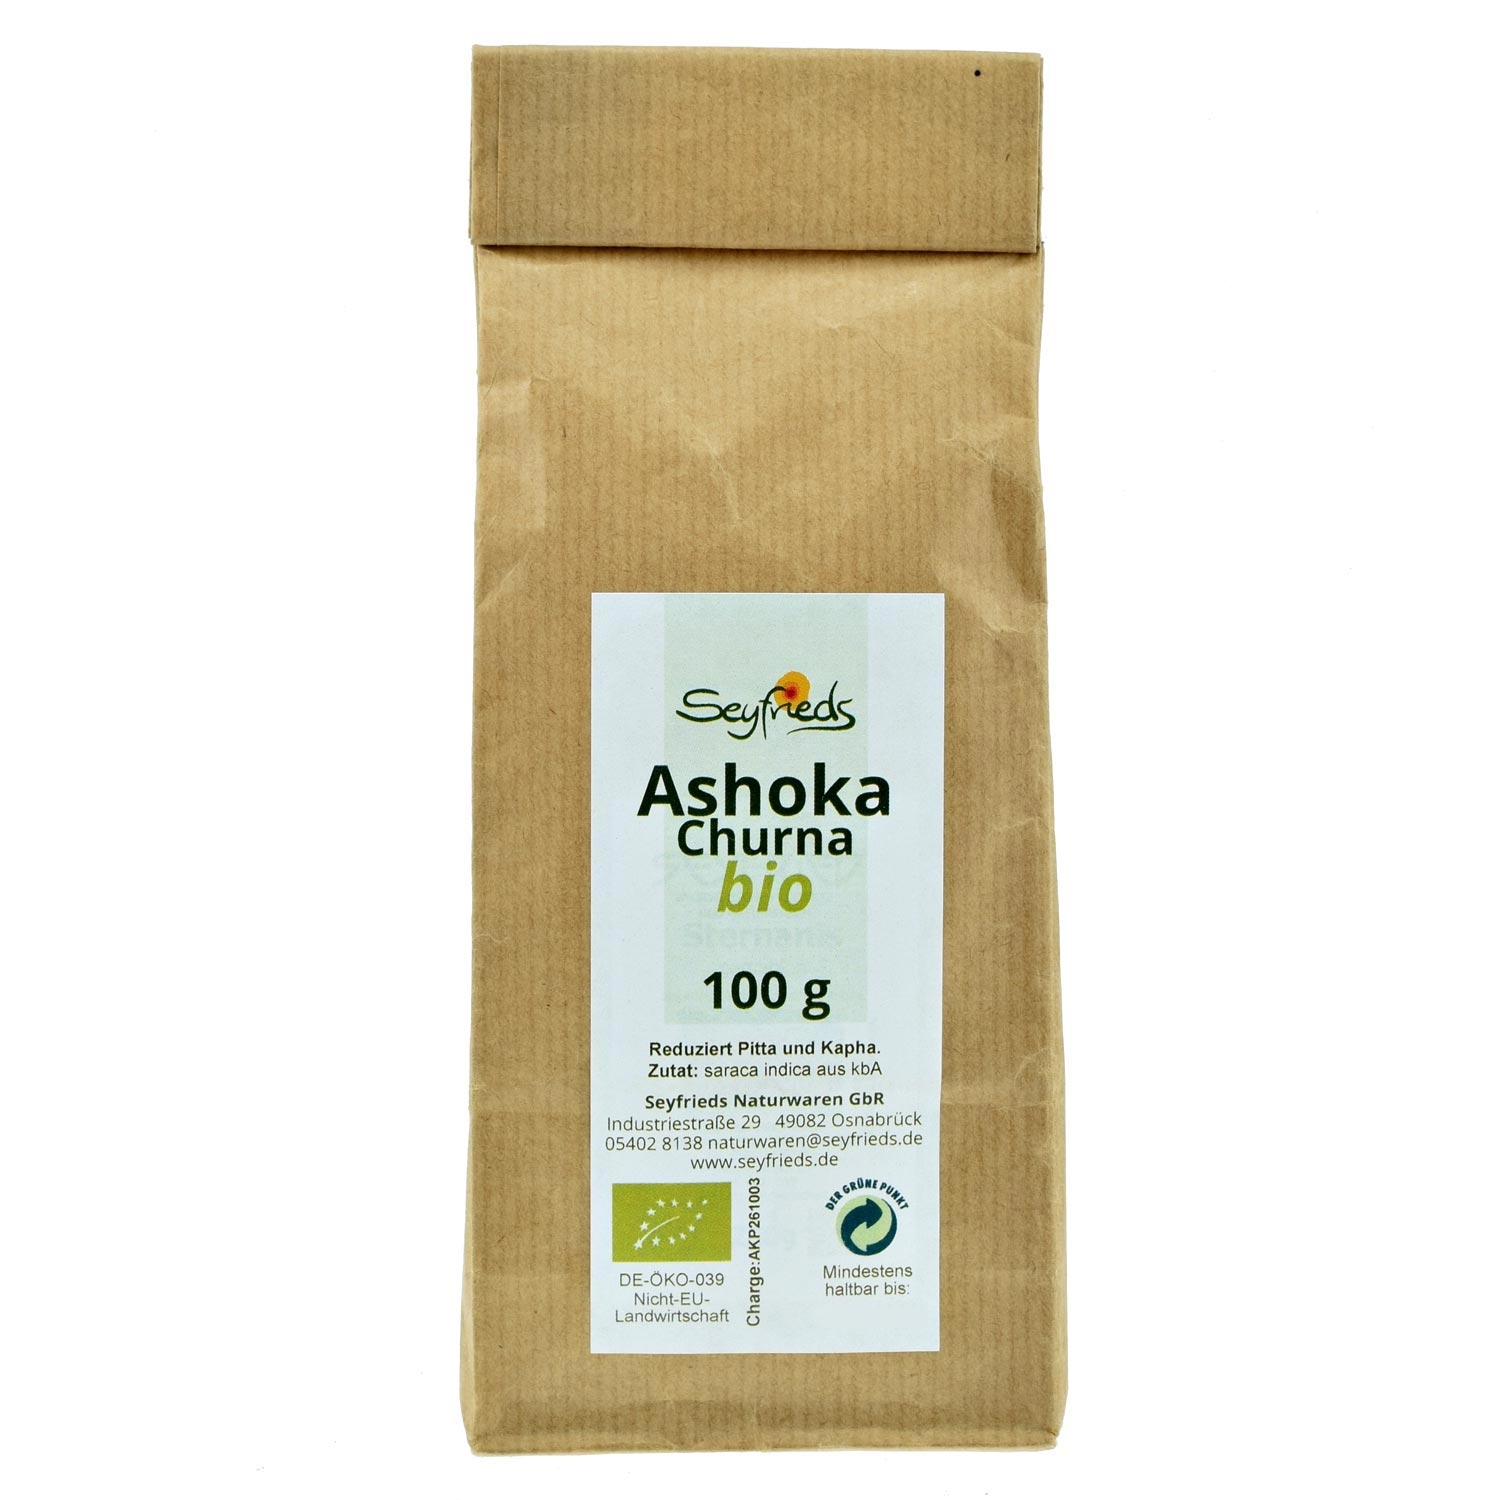 Ashoka Churna bio 100 g Seyfrieds